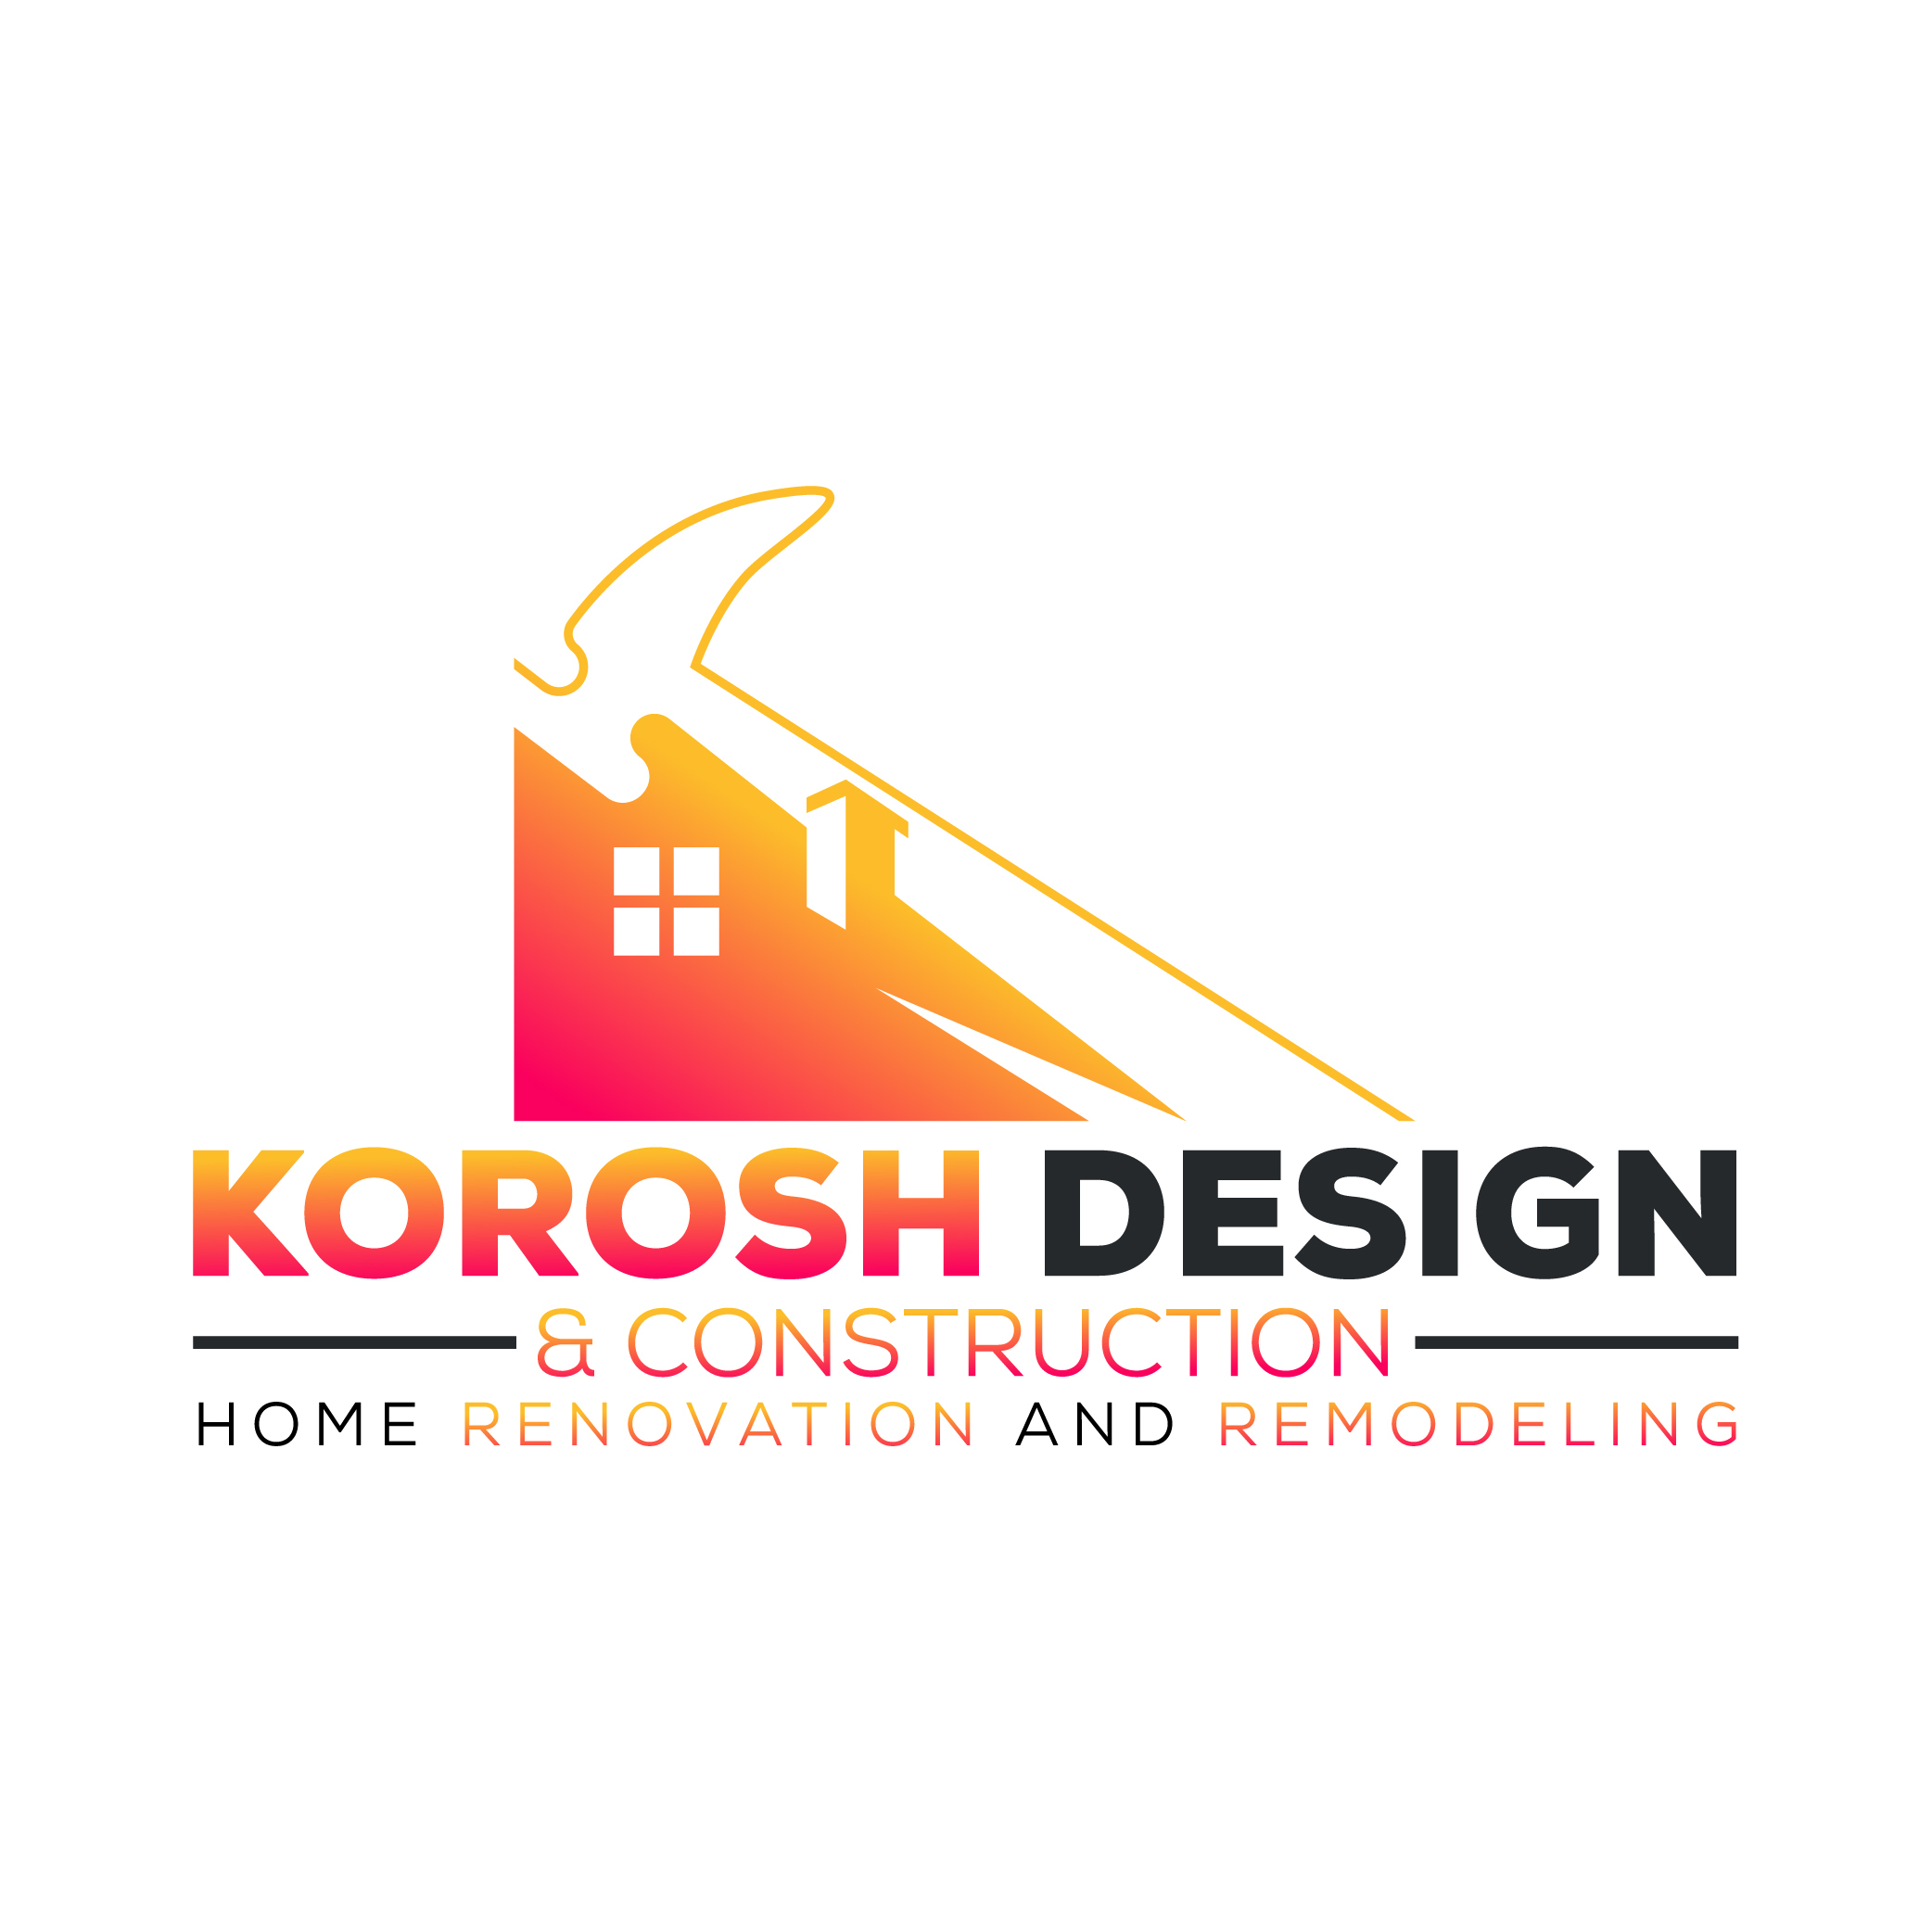 Korosh design & construction 's logo